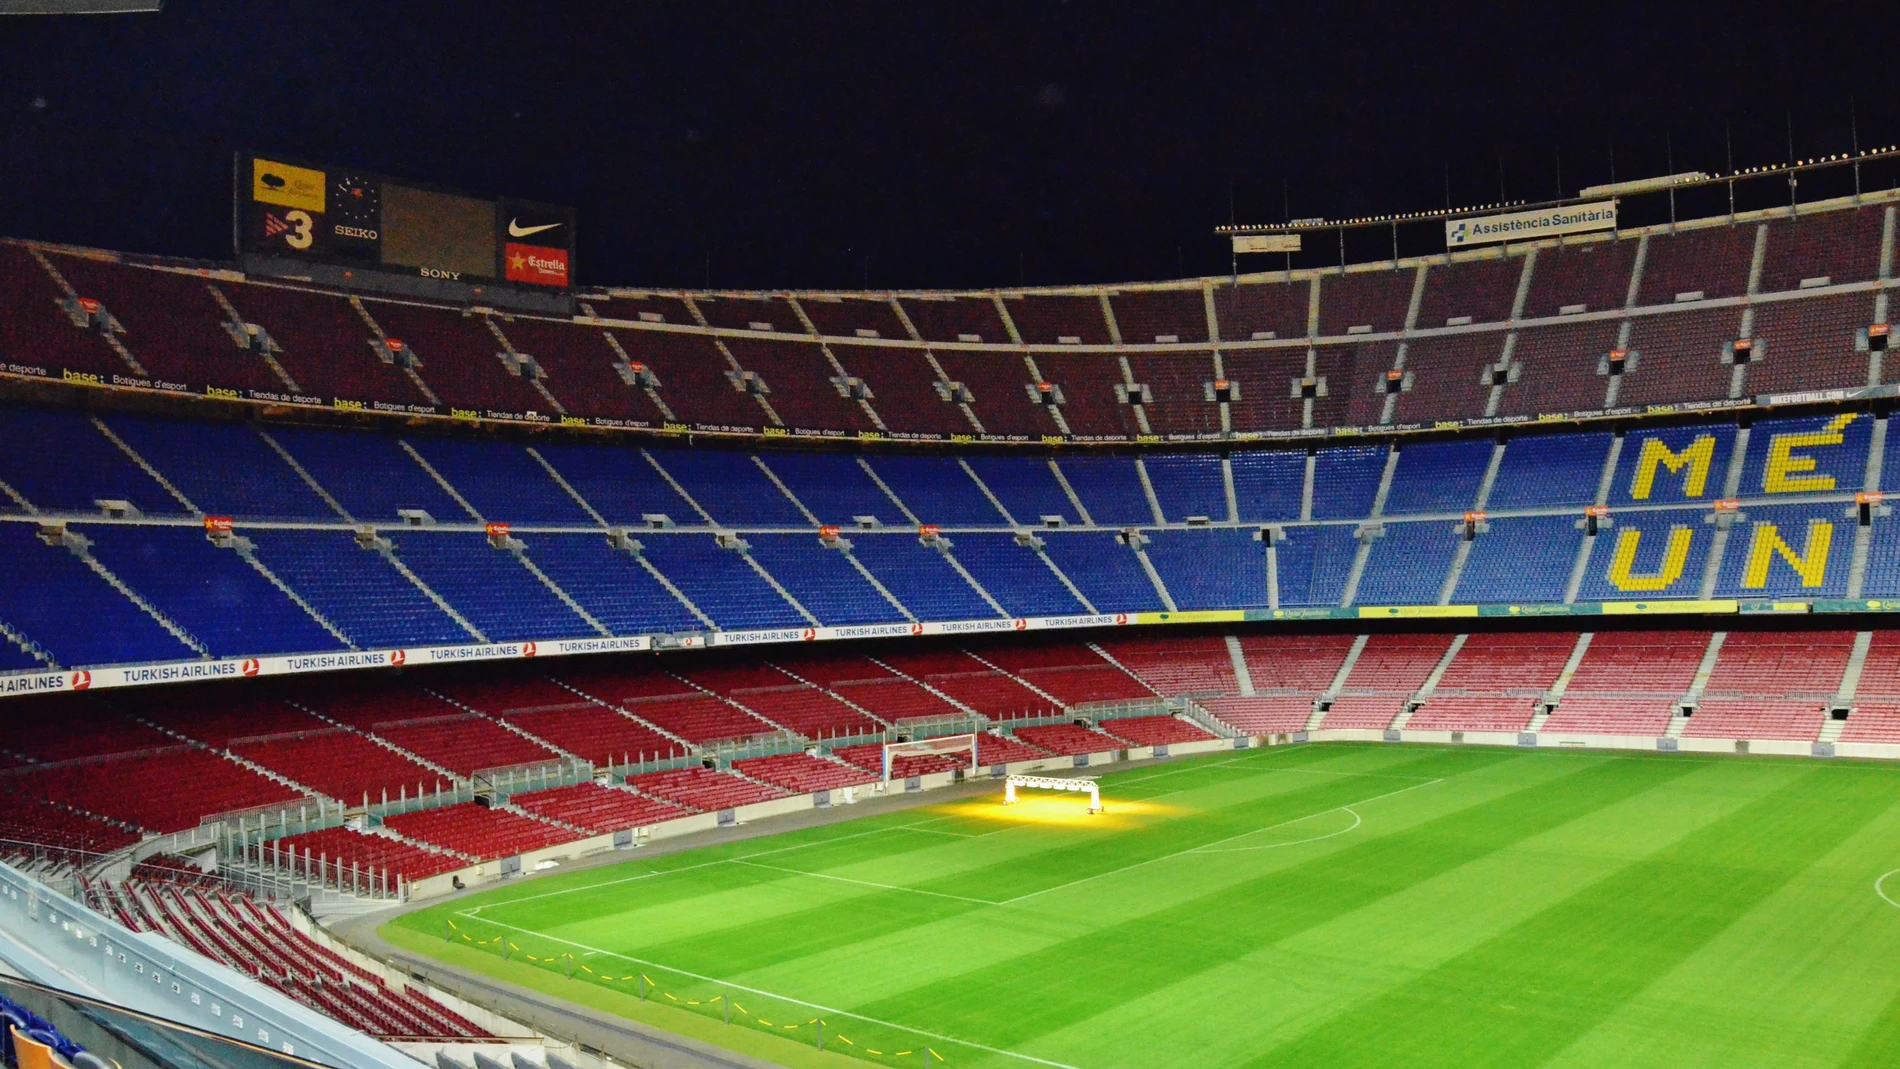 Camp Nou, estadio del Fútbol Club Barcelona.